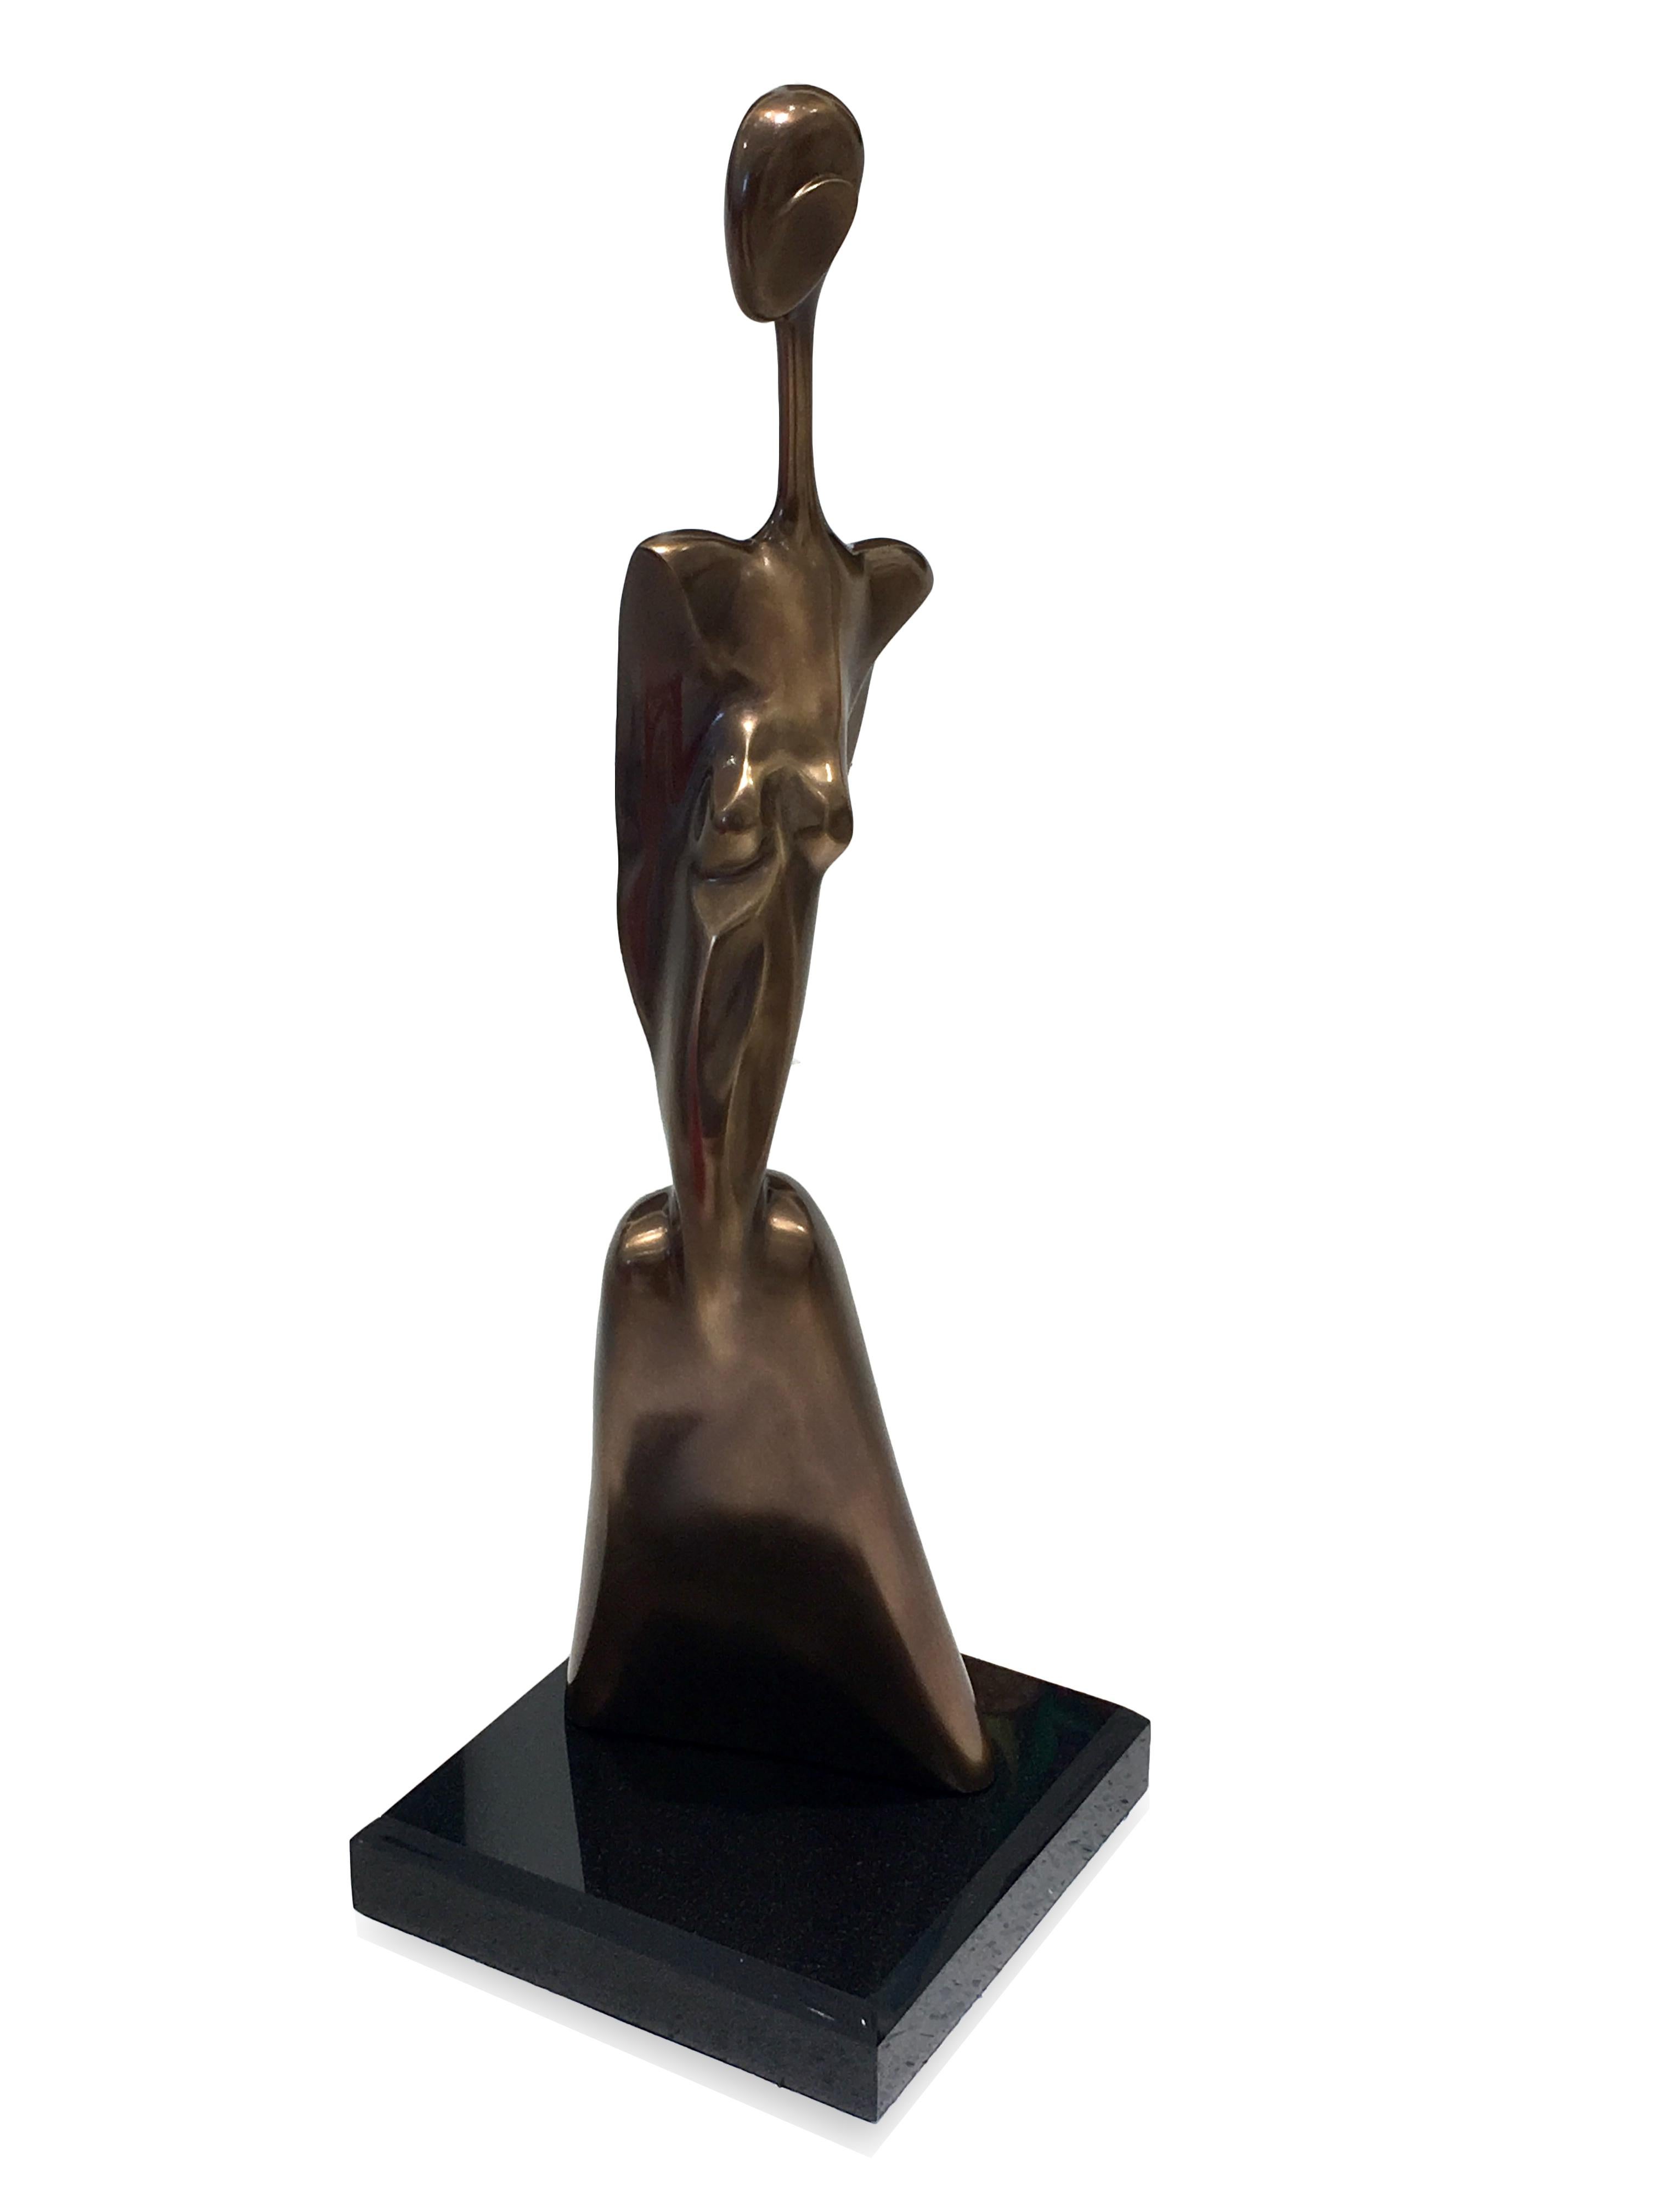 Paul Braslow Figurative Sculpture - New York [Bronze], Bronze